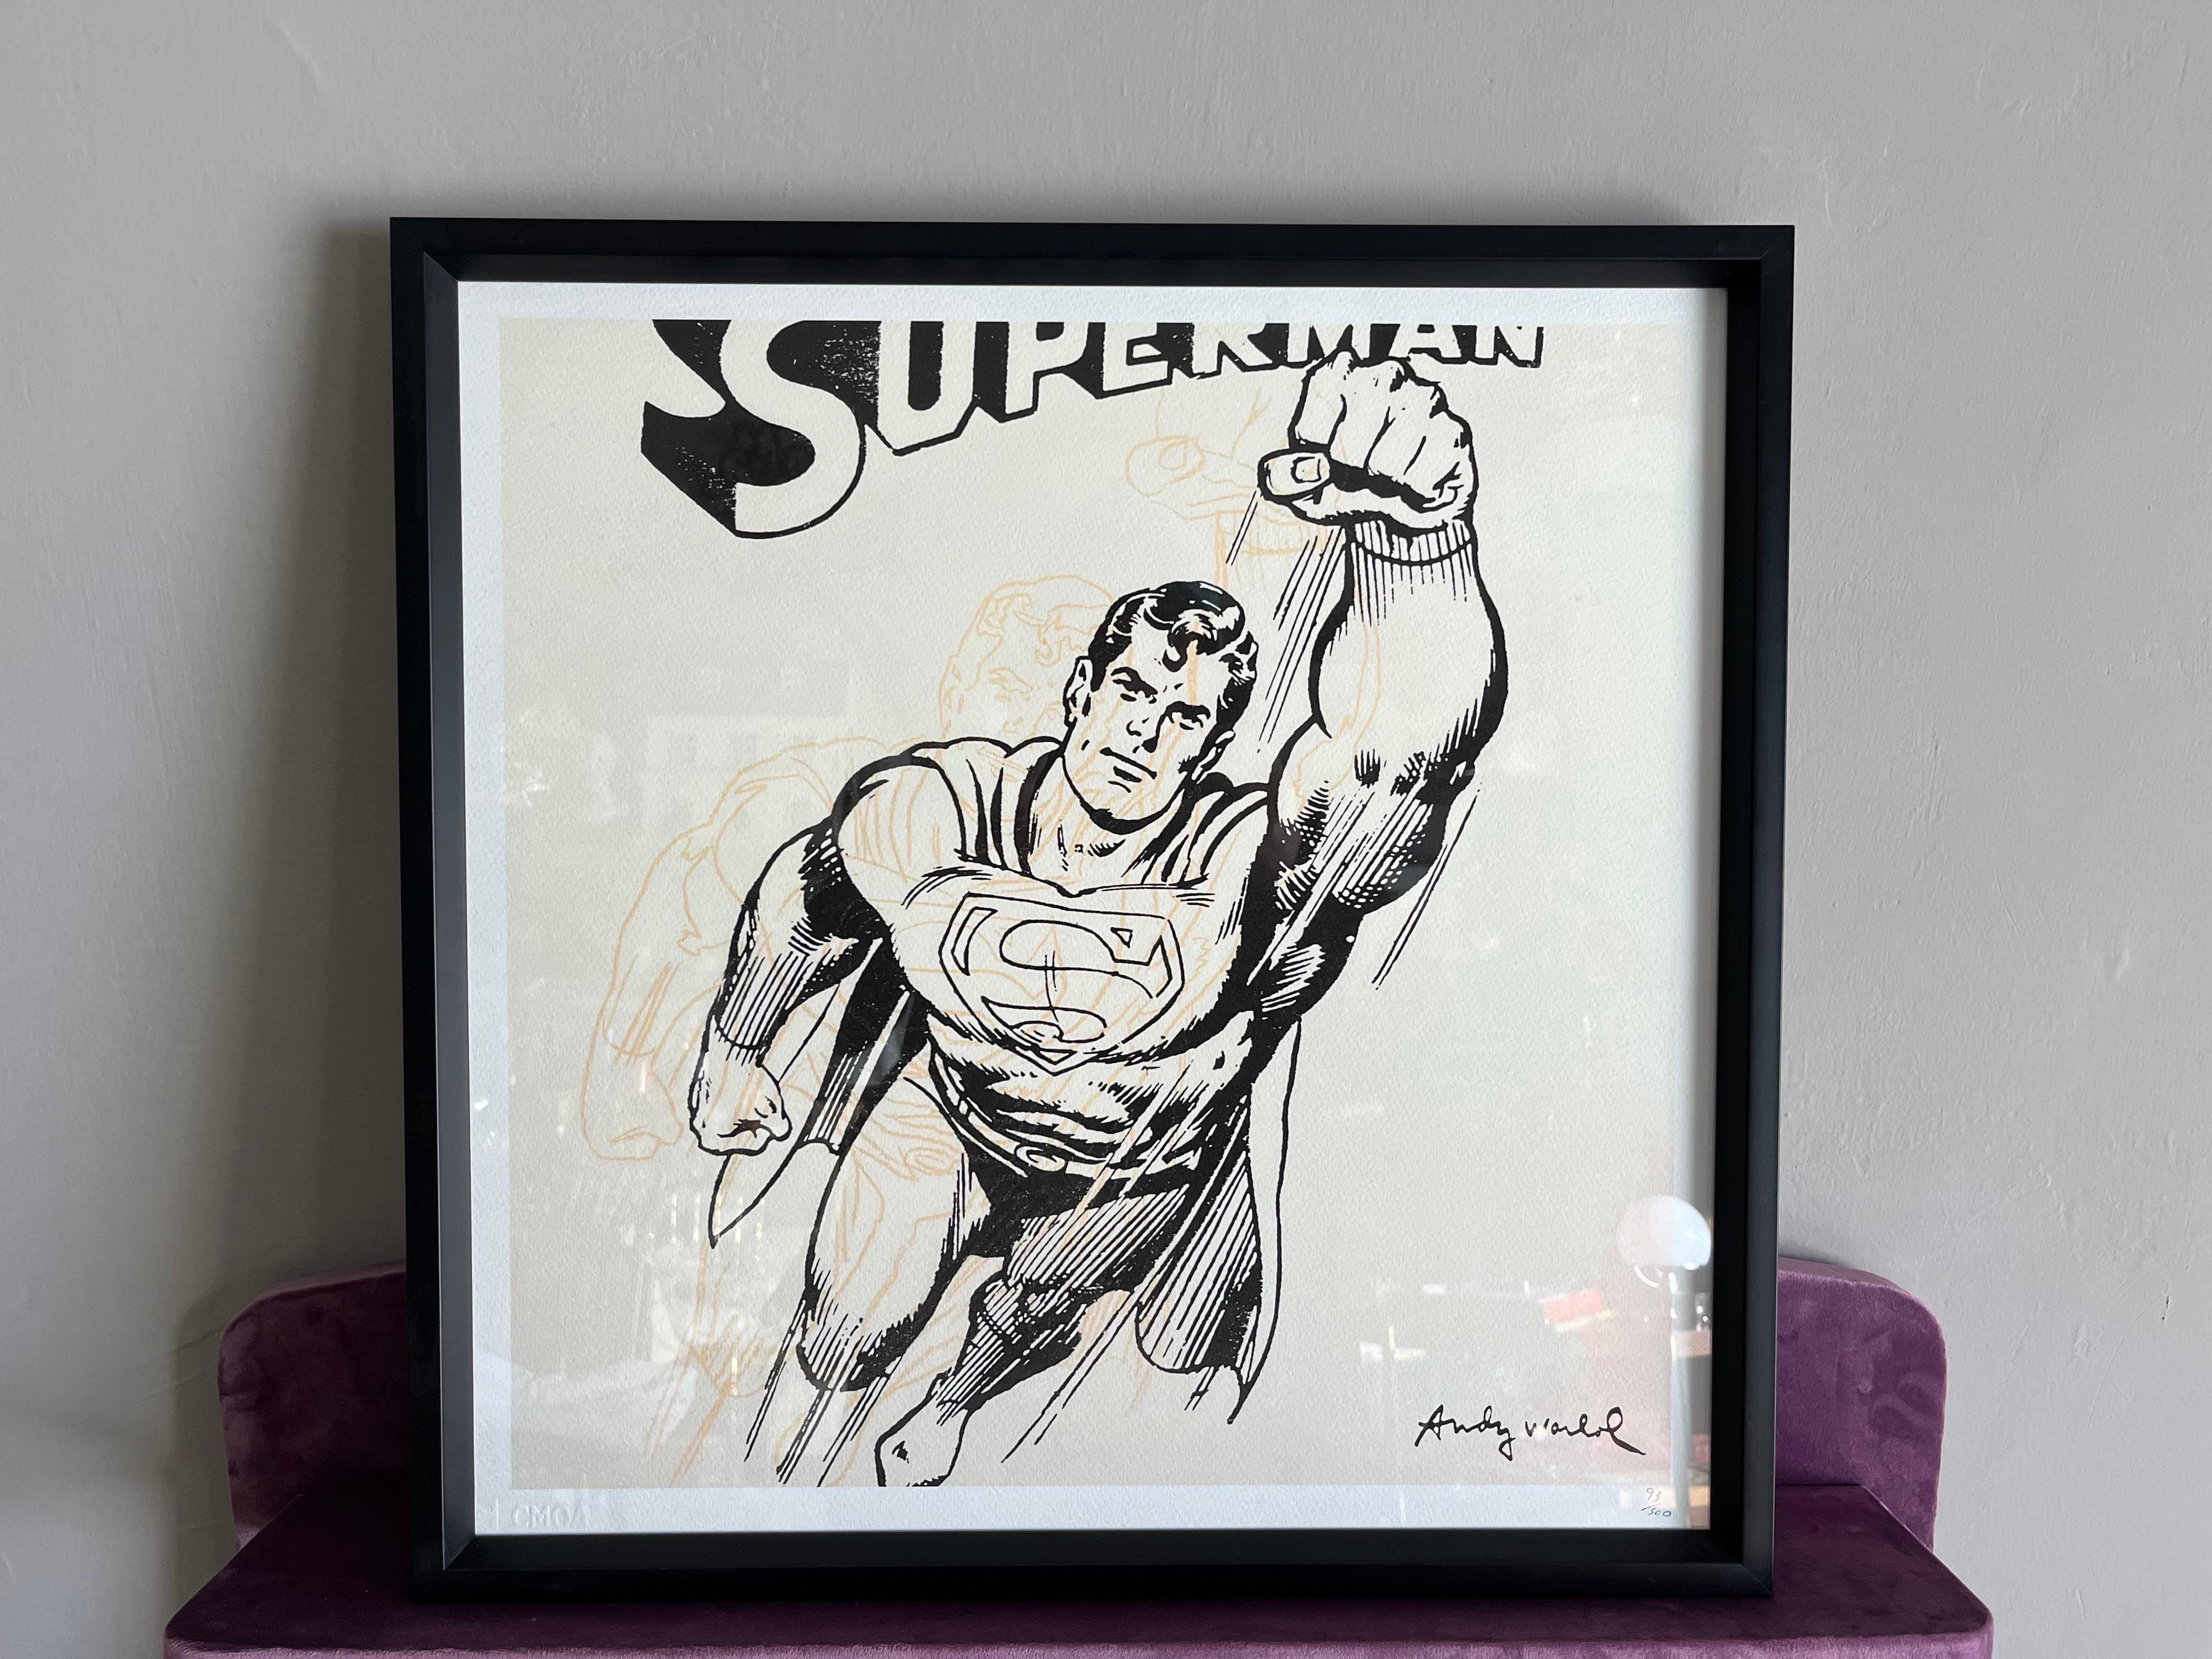 Paper Superman di Andy Warhol edizione limitata con certificato  For Sale